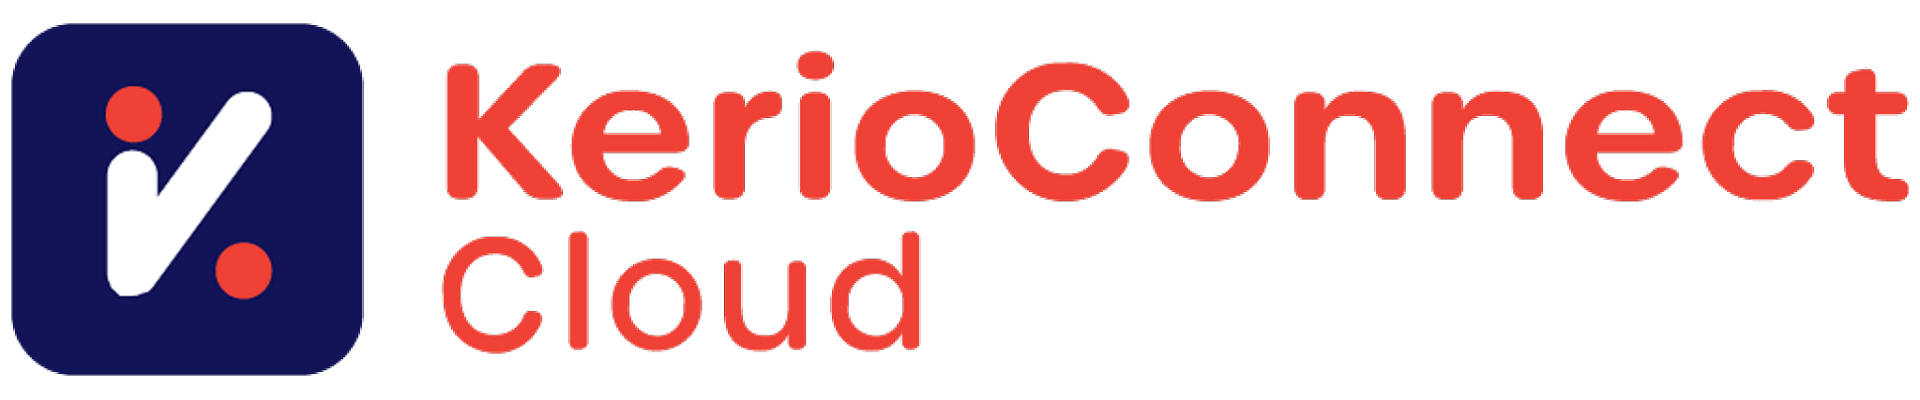 Kerio Connect Cloud